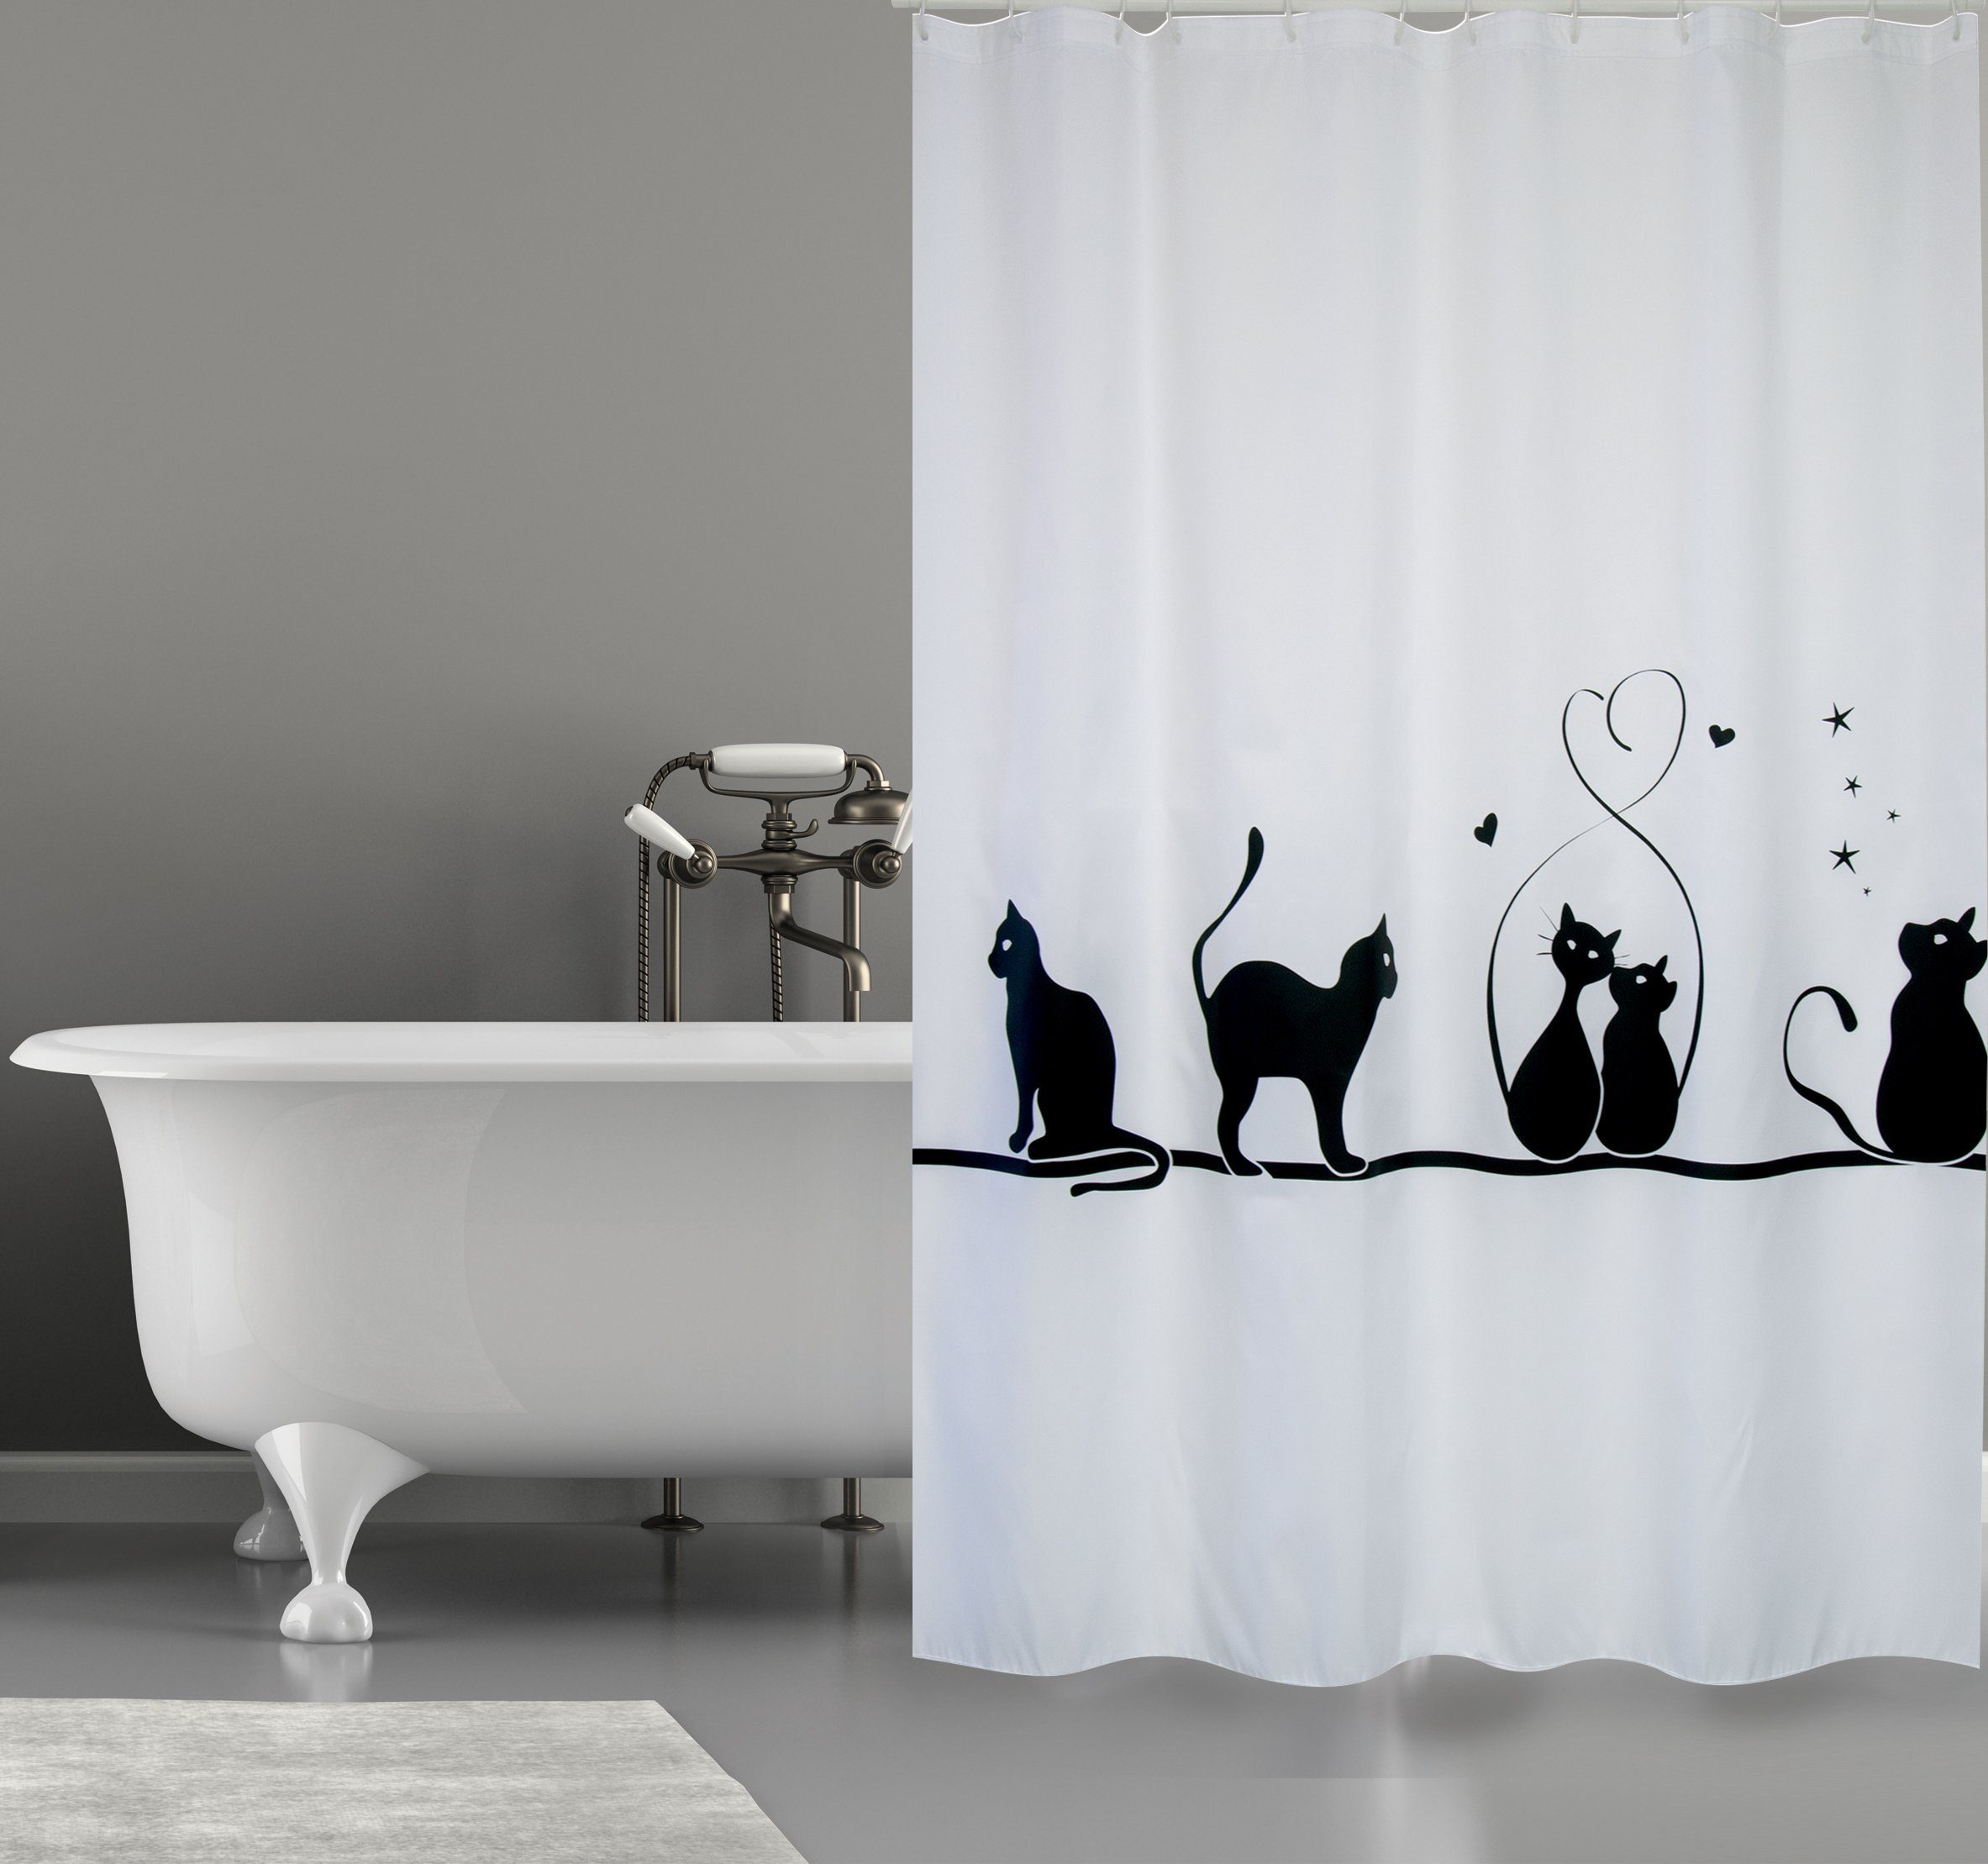 MSV Duschvorhang CAT Breite 180 cm, Premium Anti-Schimmel Textil- Duschvorhang, Polyester, 180x200 cm, waschbar, weiß-schwarz, Motiv "Cat"